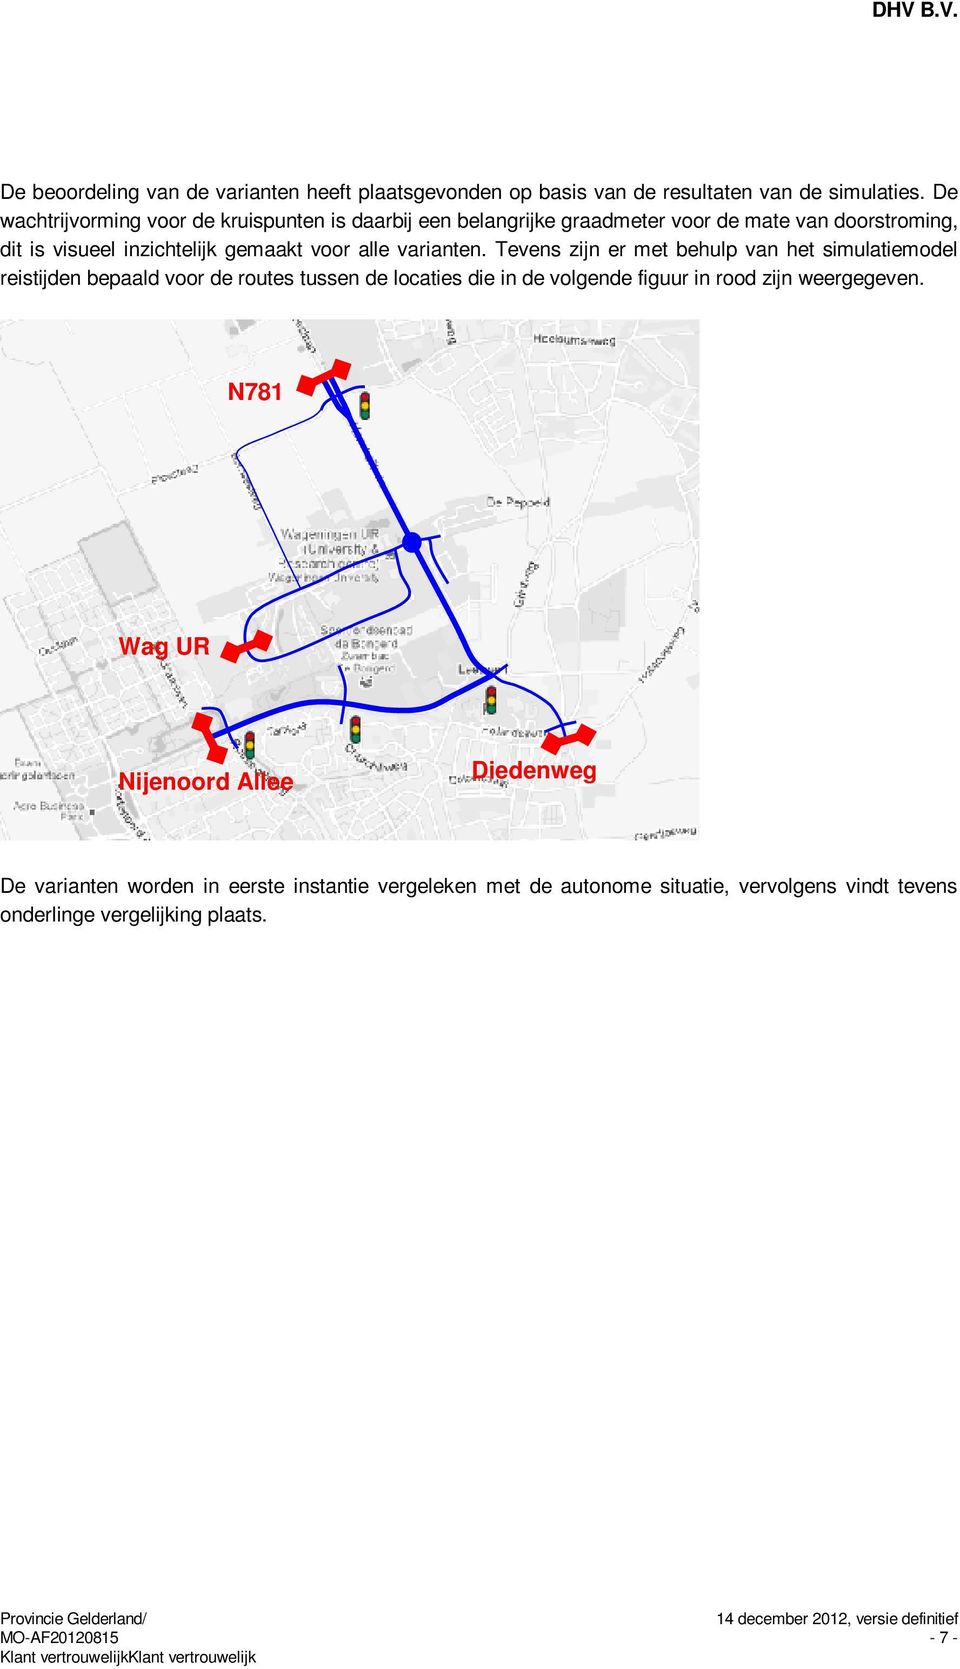 Tevens zijn er met behulp van het simulatiemodel reistijden bepaald voor de routes tussen de locaties die in de volgende figuur in rood zijn weergegeven.